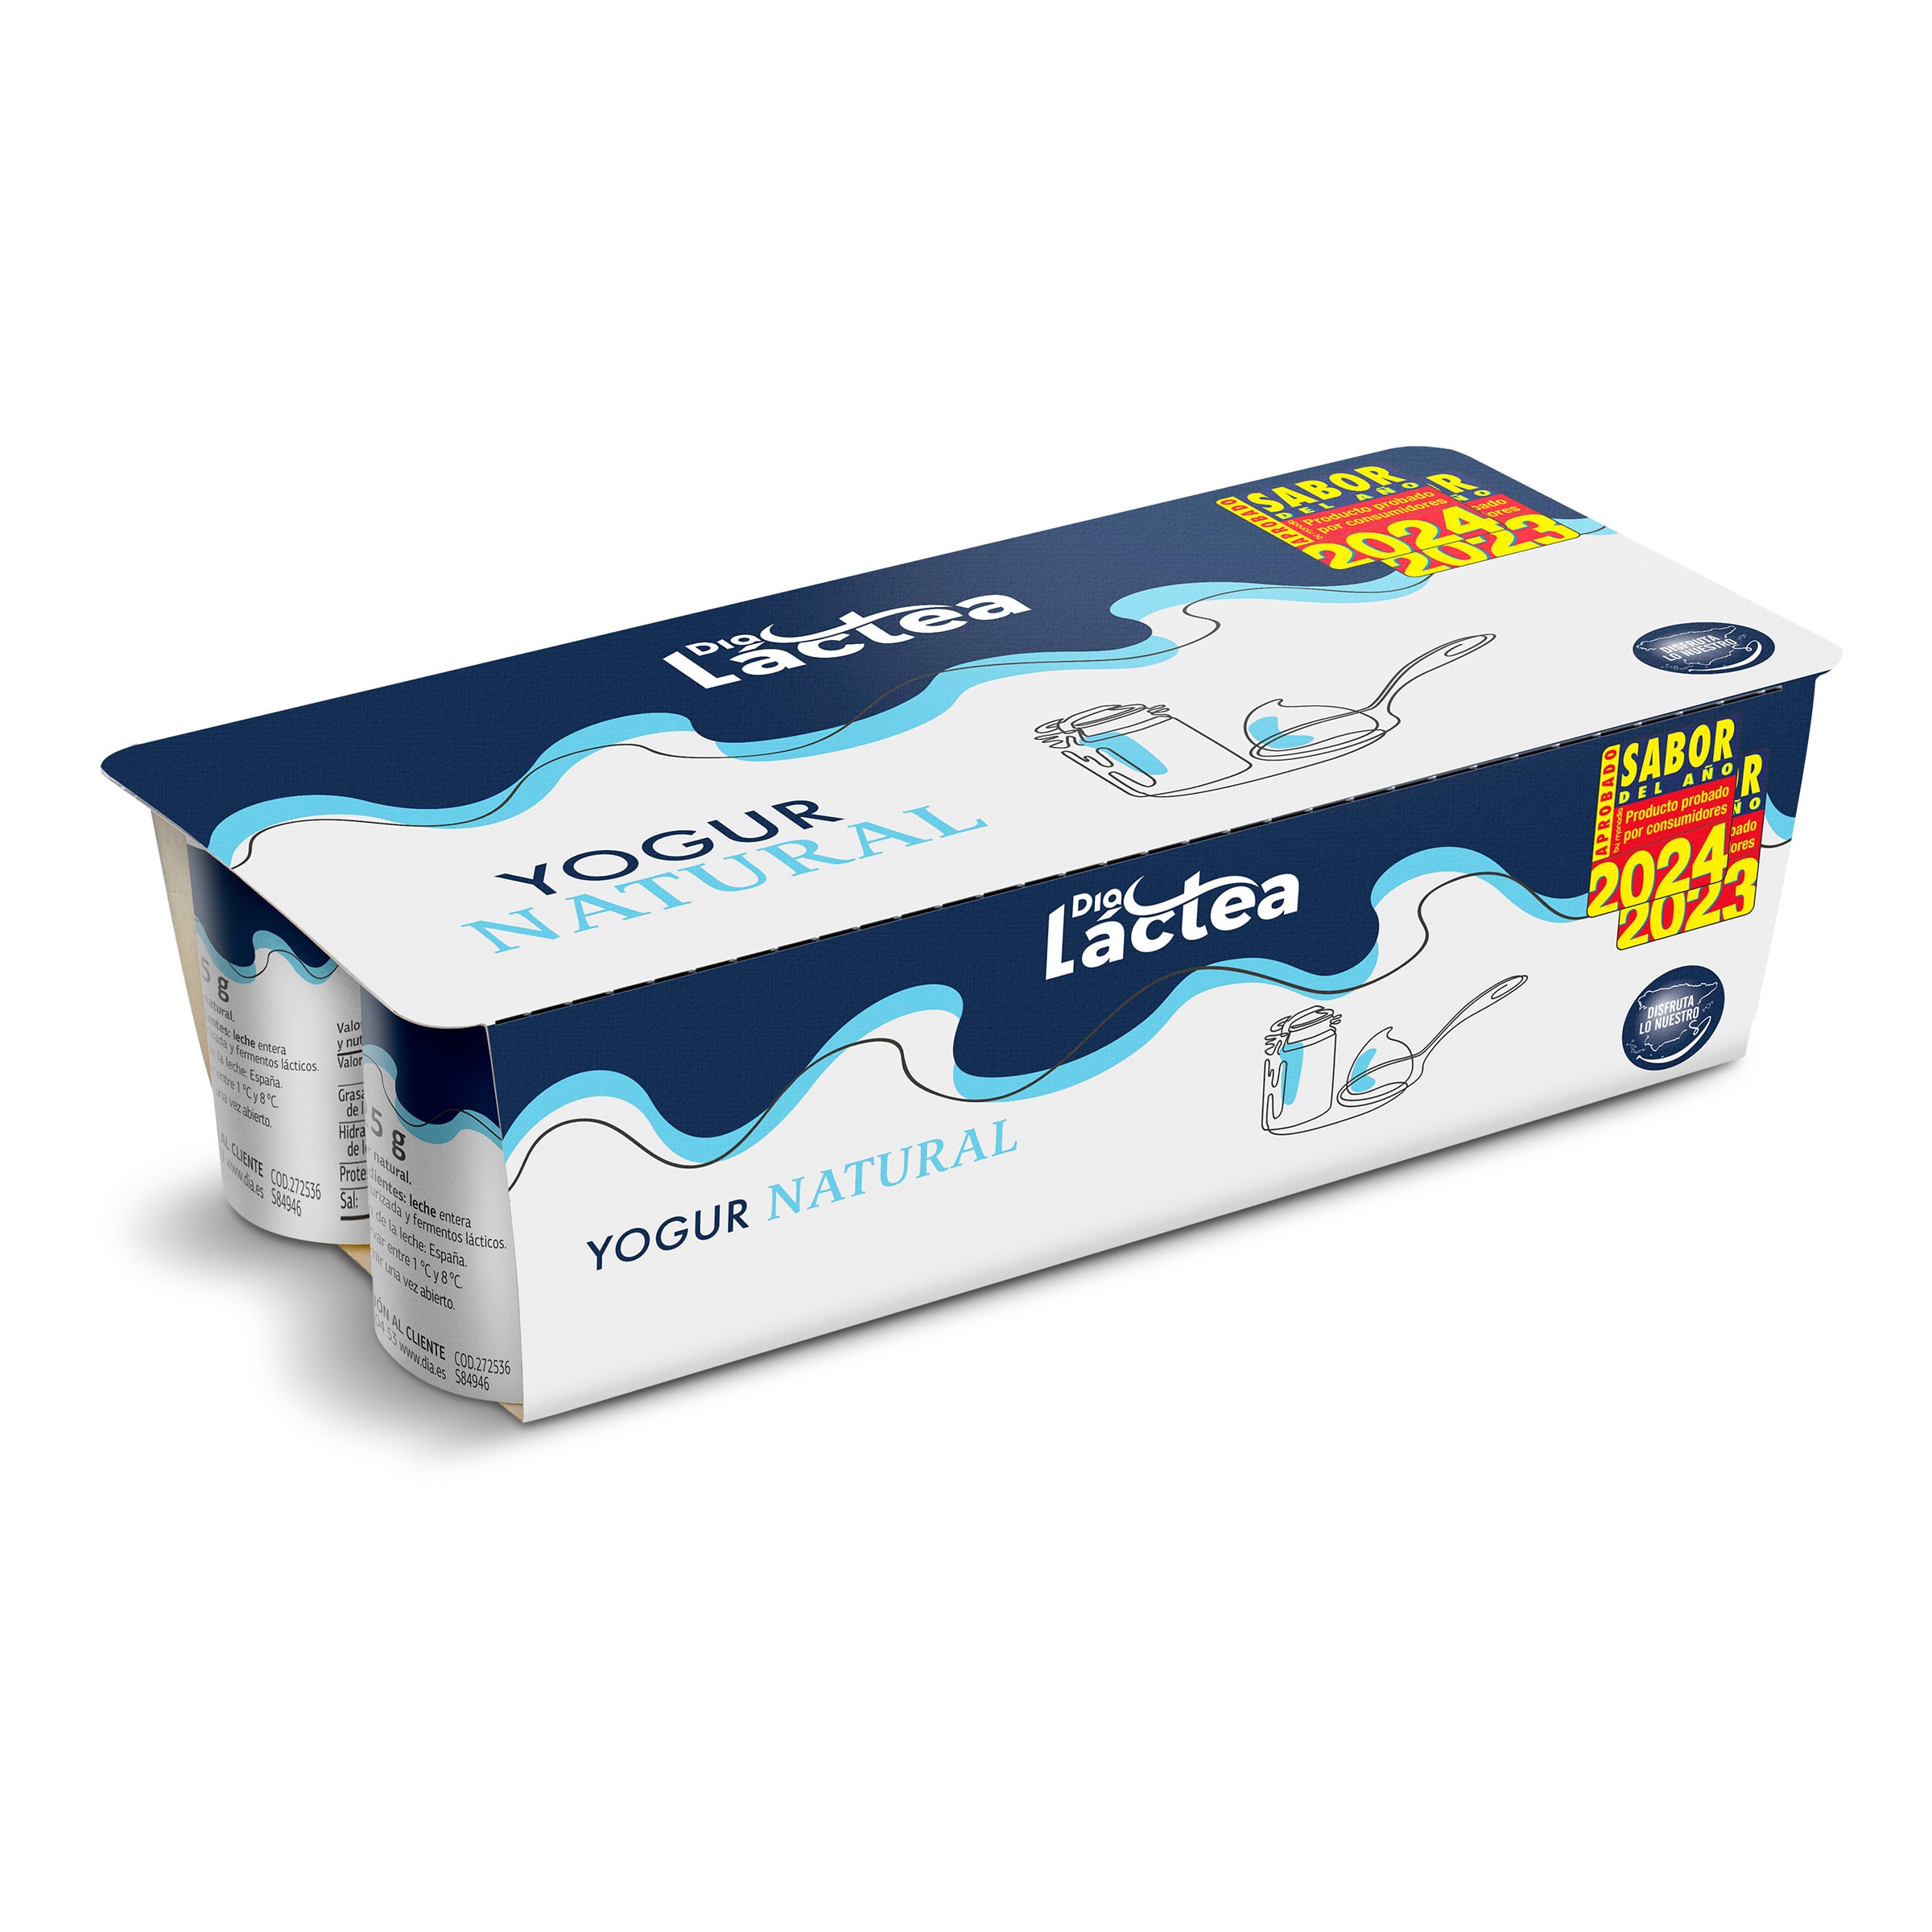 Leche entera sin lactosa Dia Láctea brik 1 l - Supermercados DIA